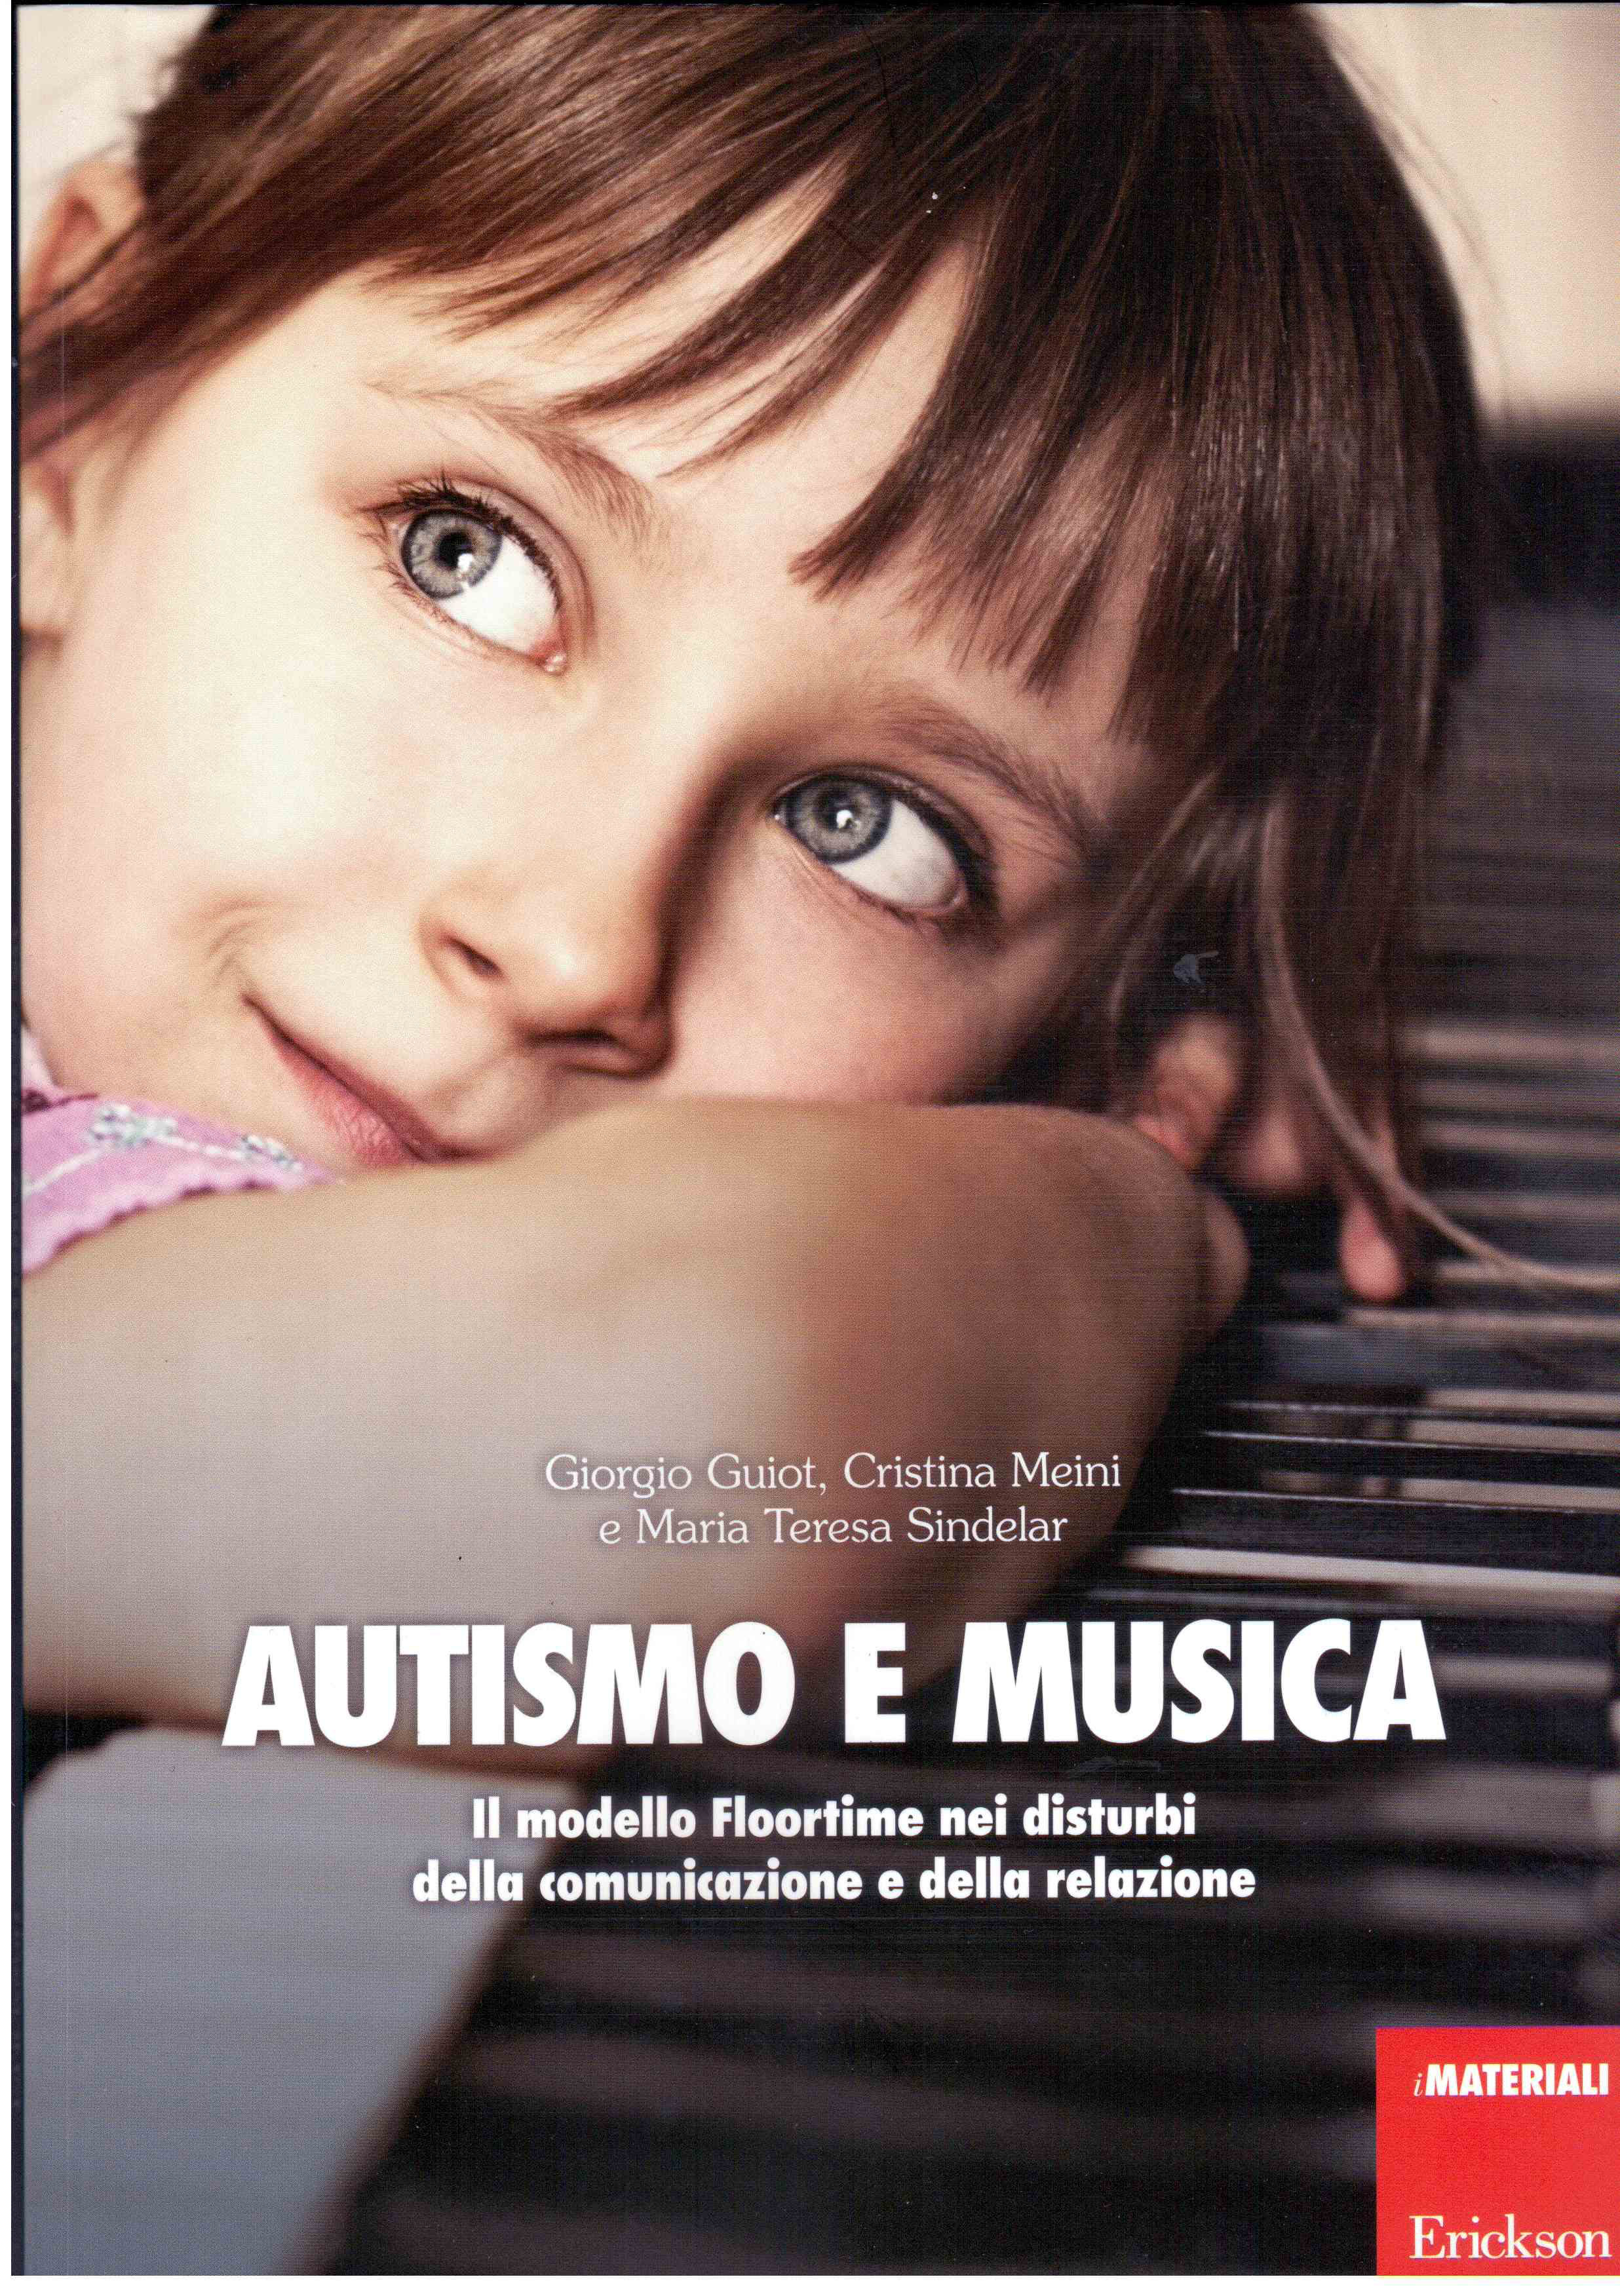 Autismo e musica